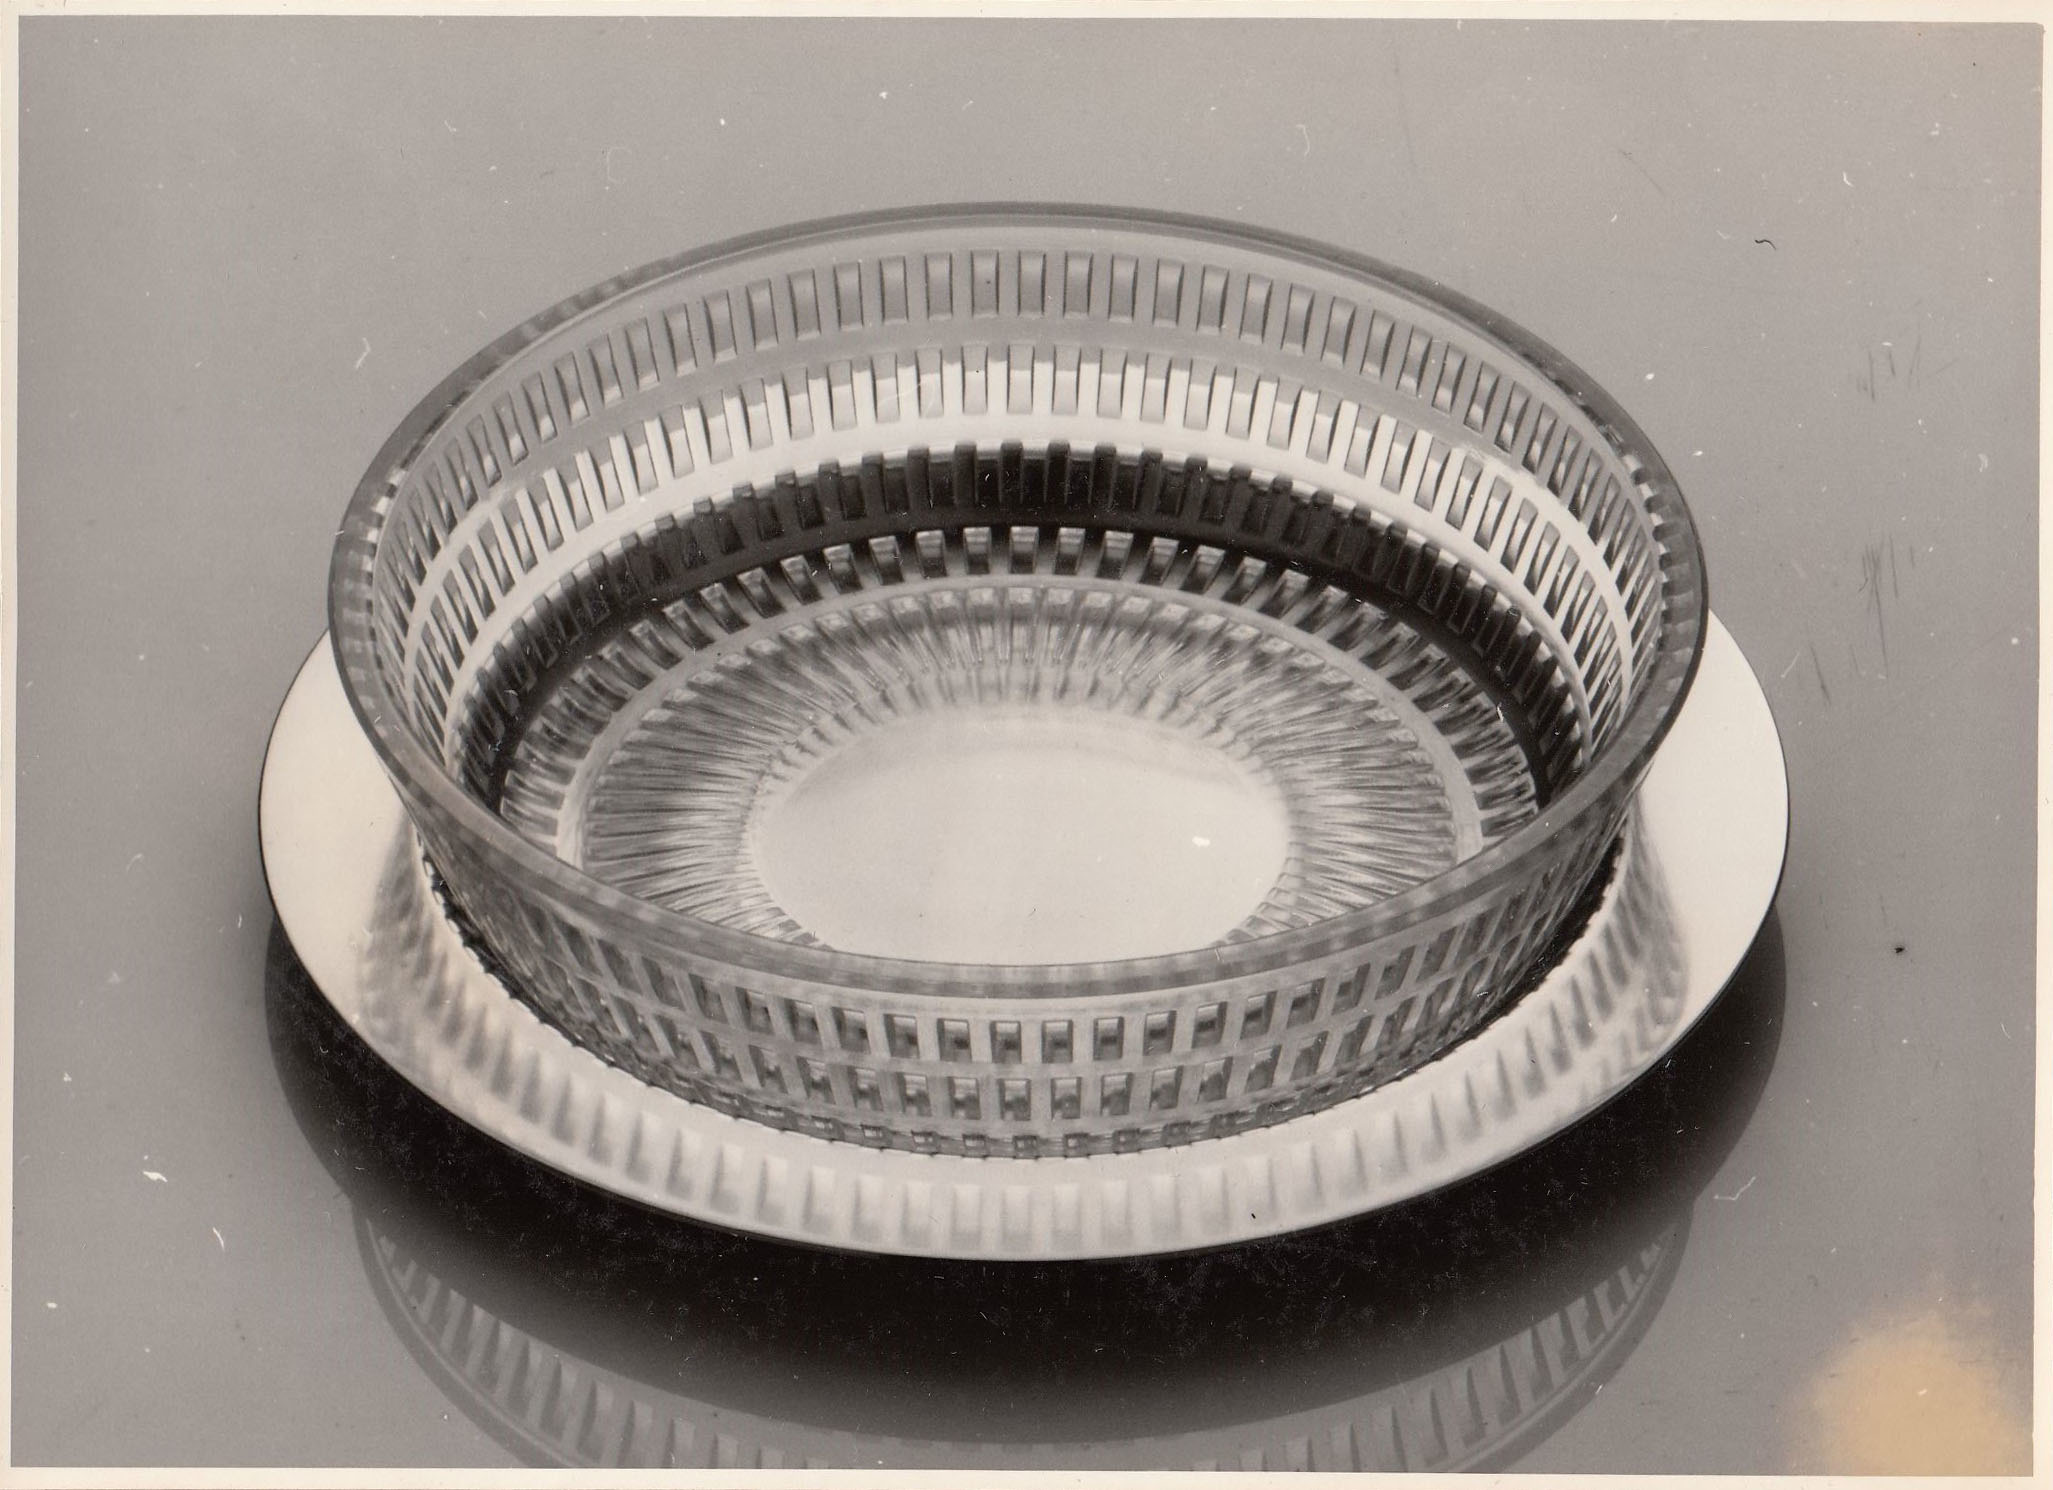 Glaskompotteller mit Unterteller  /WMF 1962